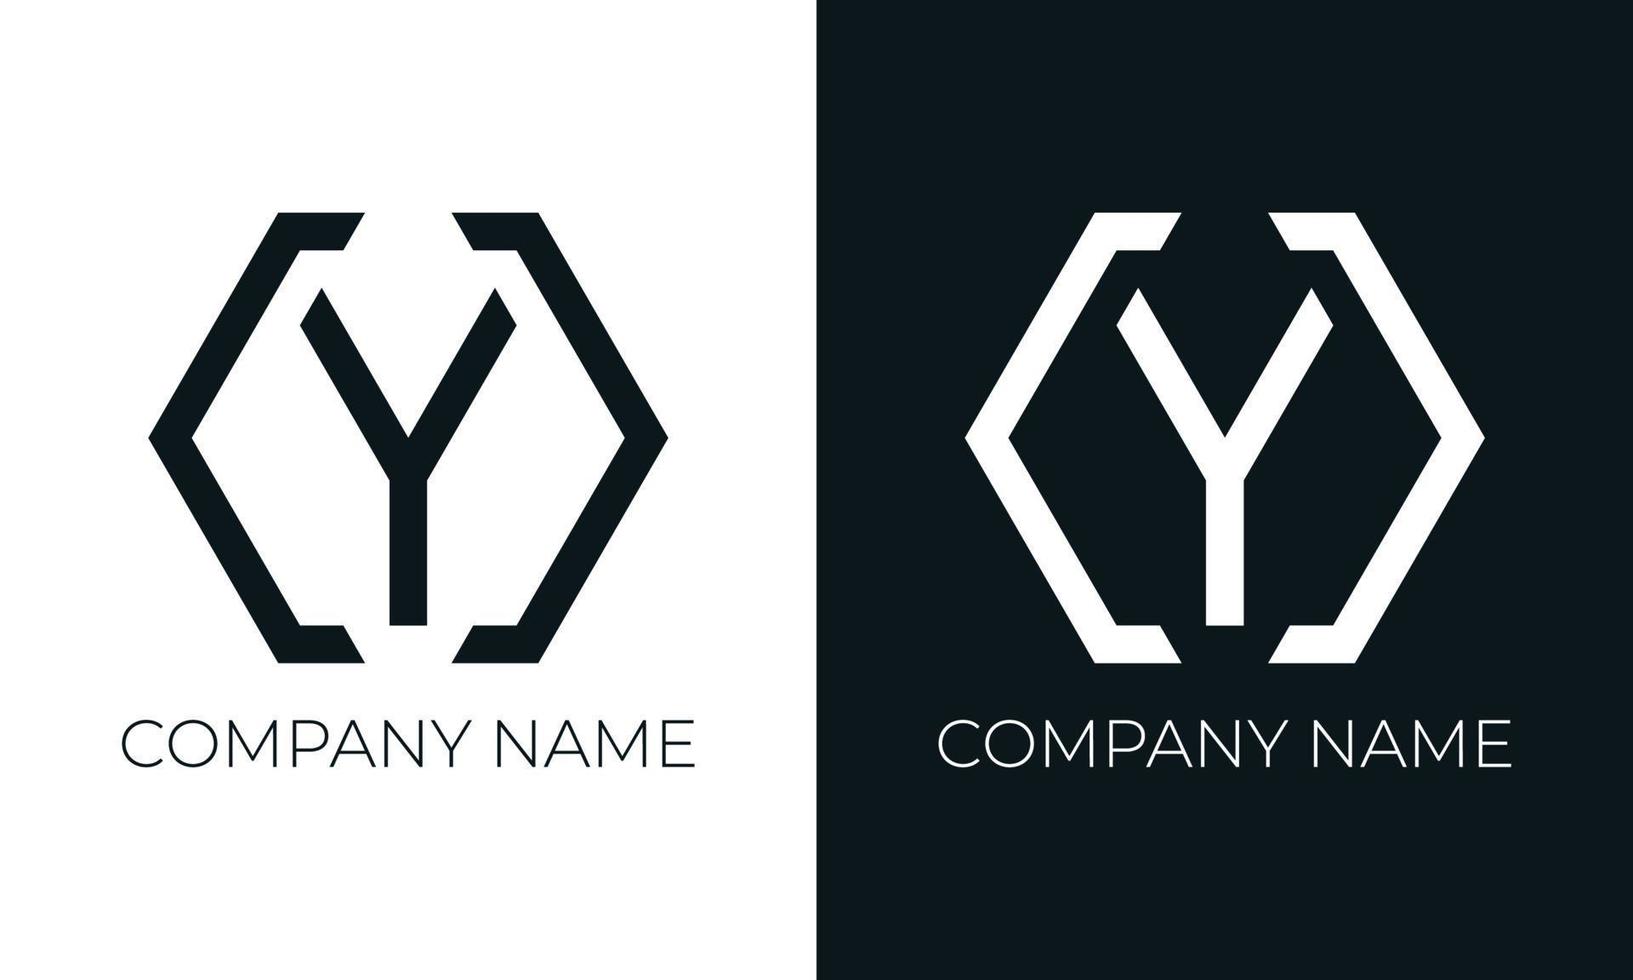 plantilla de diseño de vector de logotipo de letra inicial y. tipografía moderna creativa y de moda y colores negros.